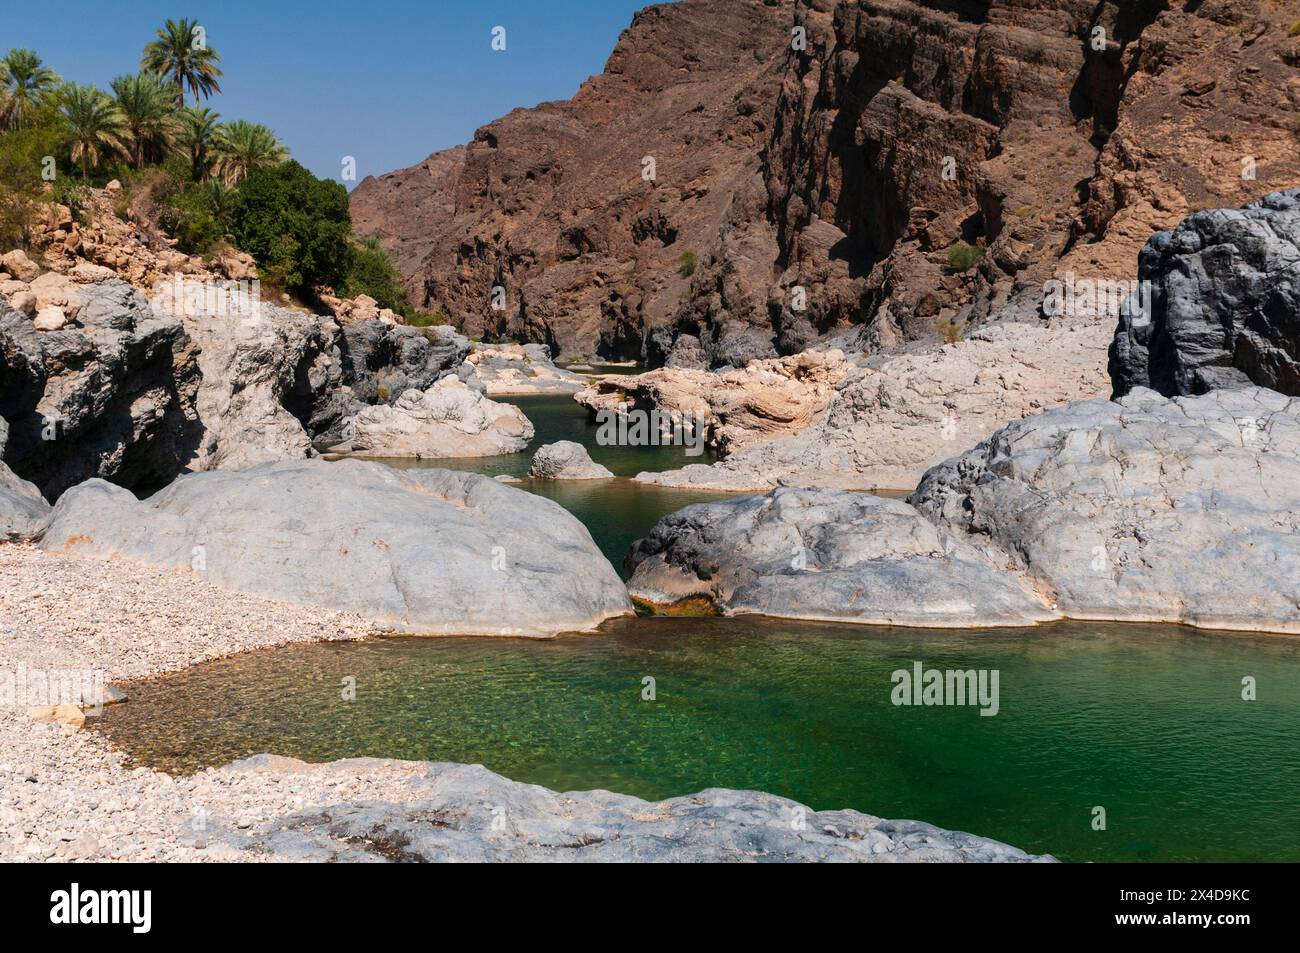 Ein natürlicher Pool im Wadi Al Arbieen, am Fuße der Wüstenberge. Wadi Al Arbeien, Oman. Stockfoto